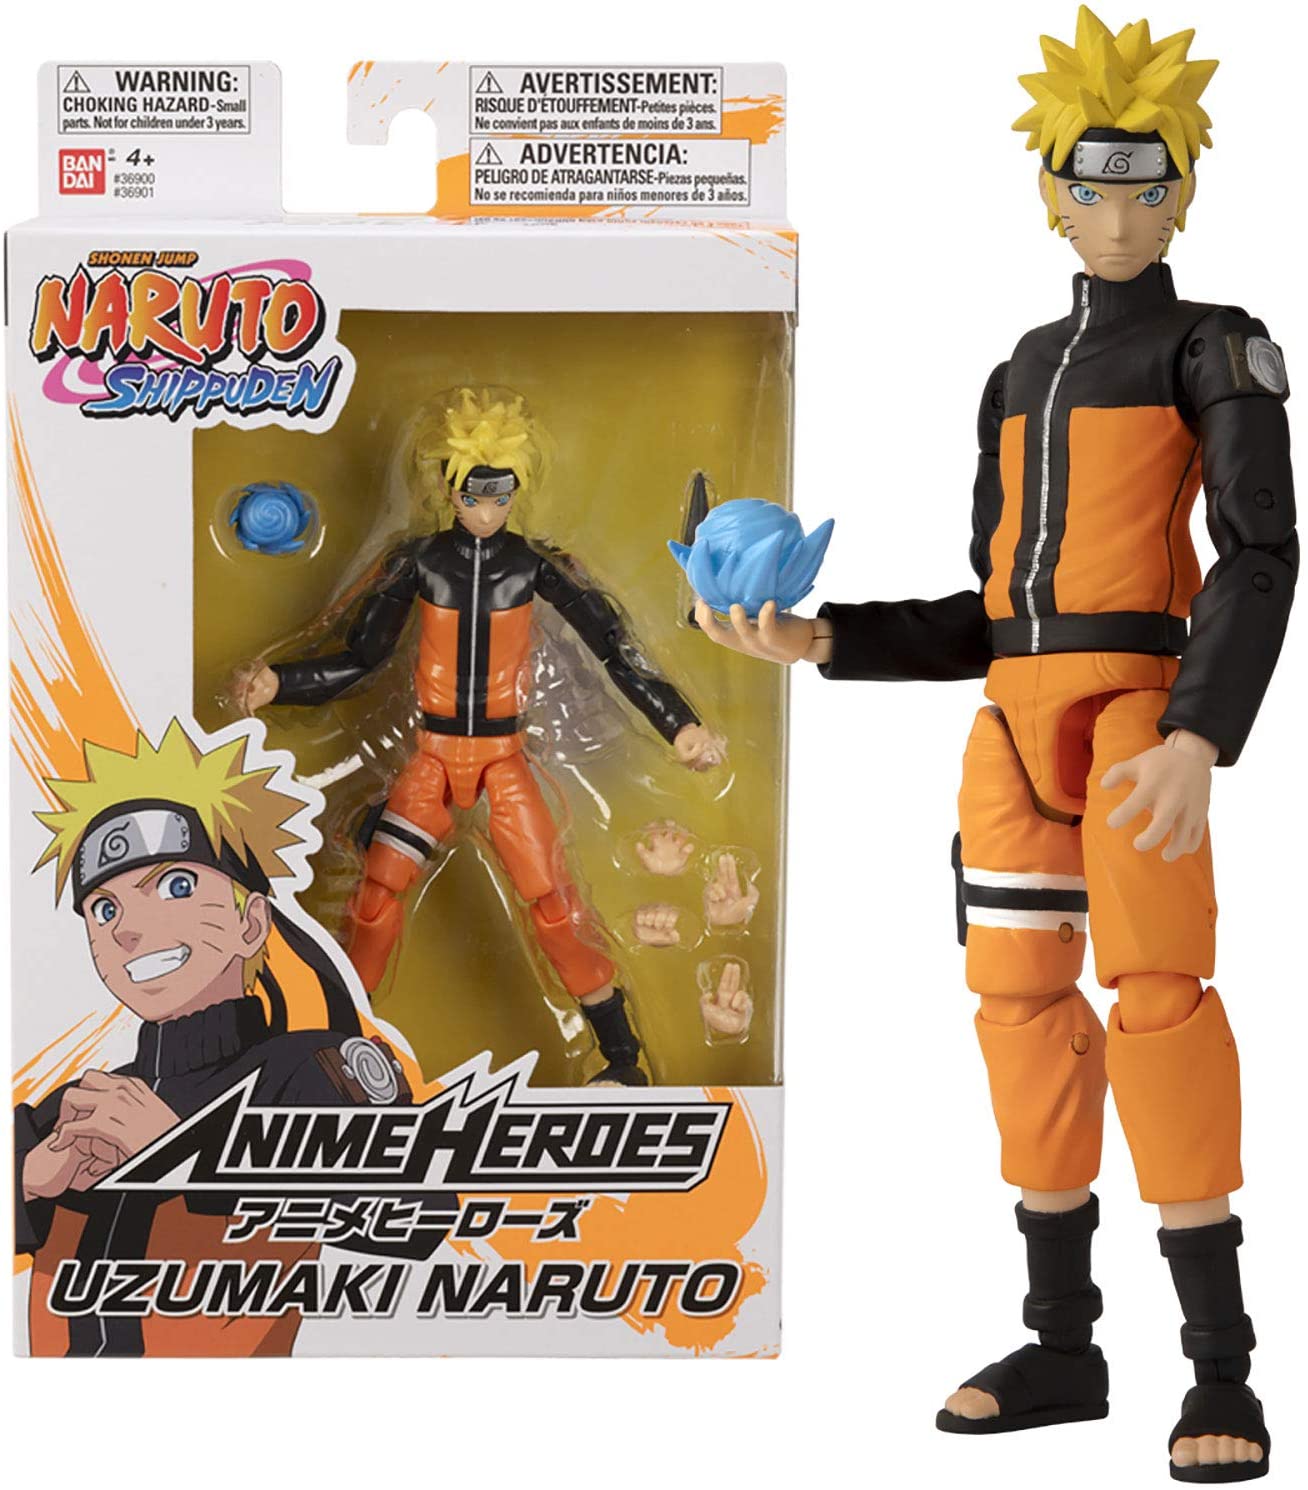 Naruto Shippuden x nanoblock™ - Naruto Uzumaki